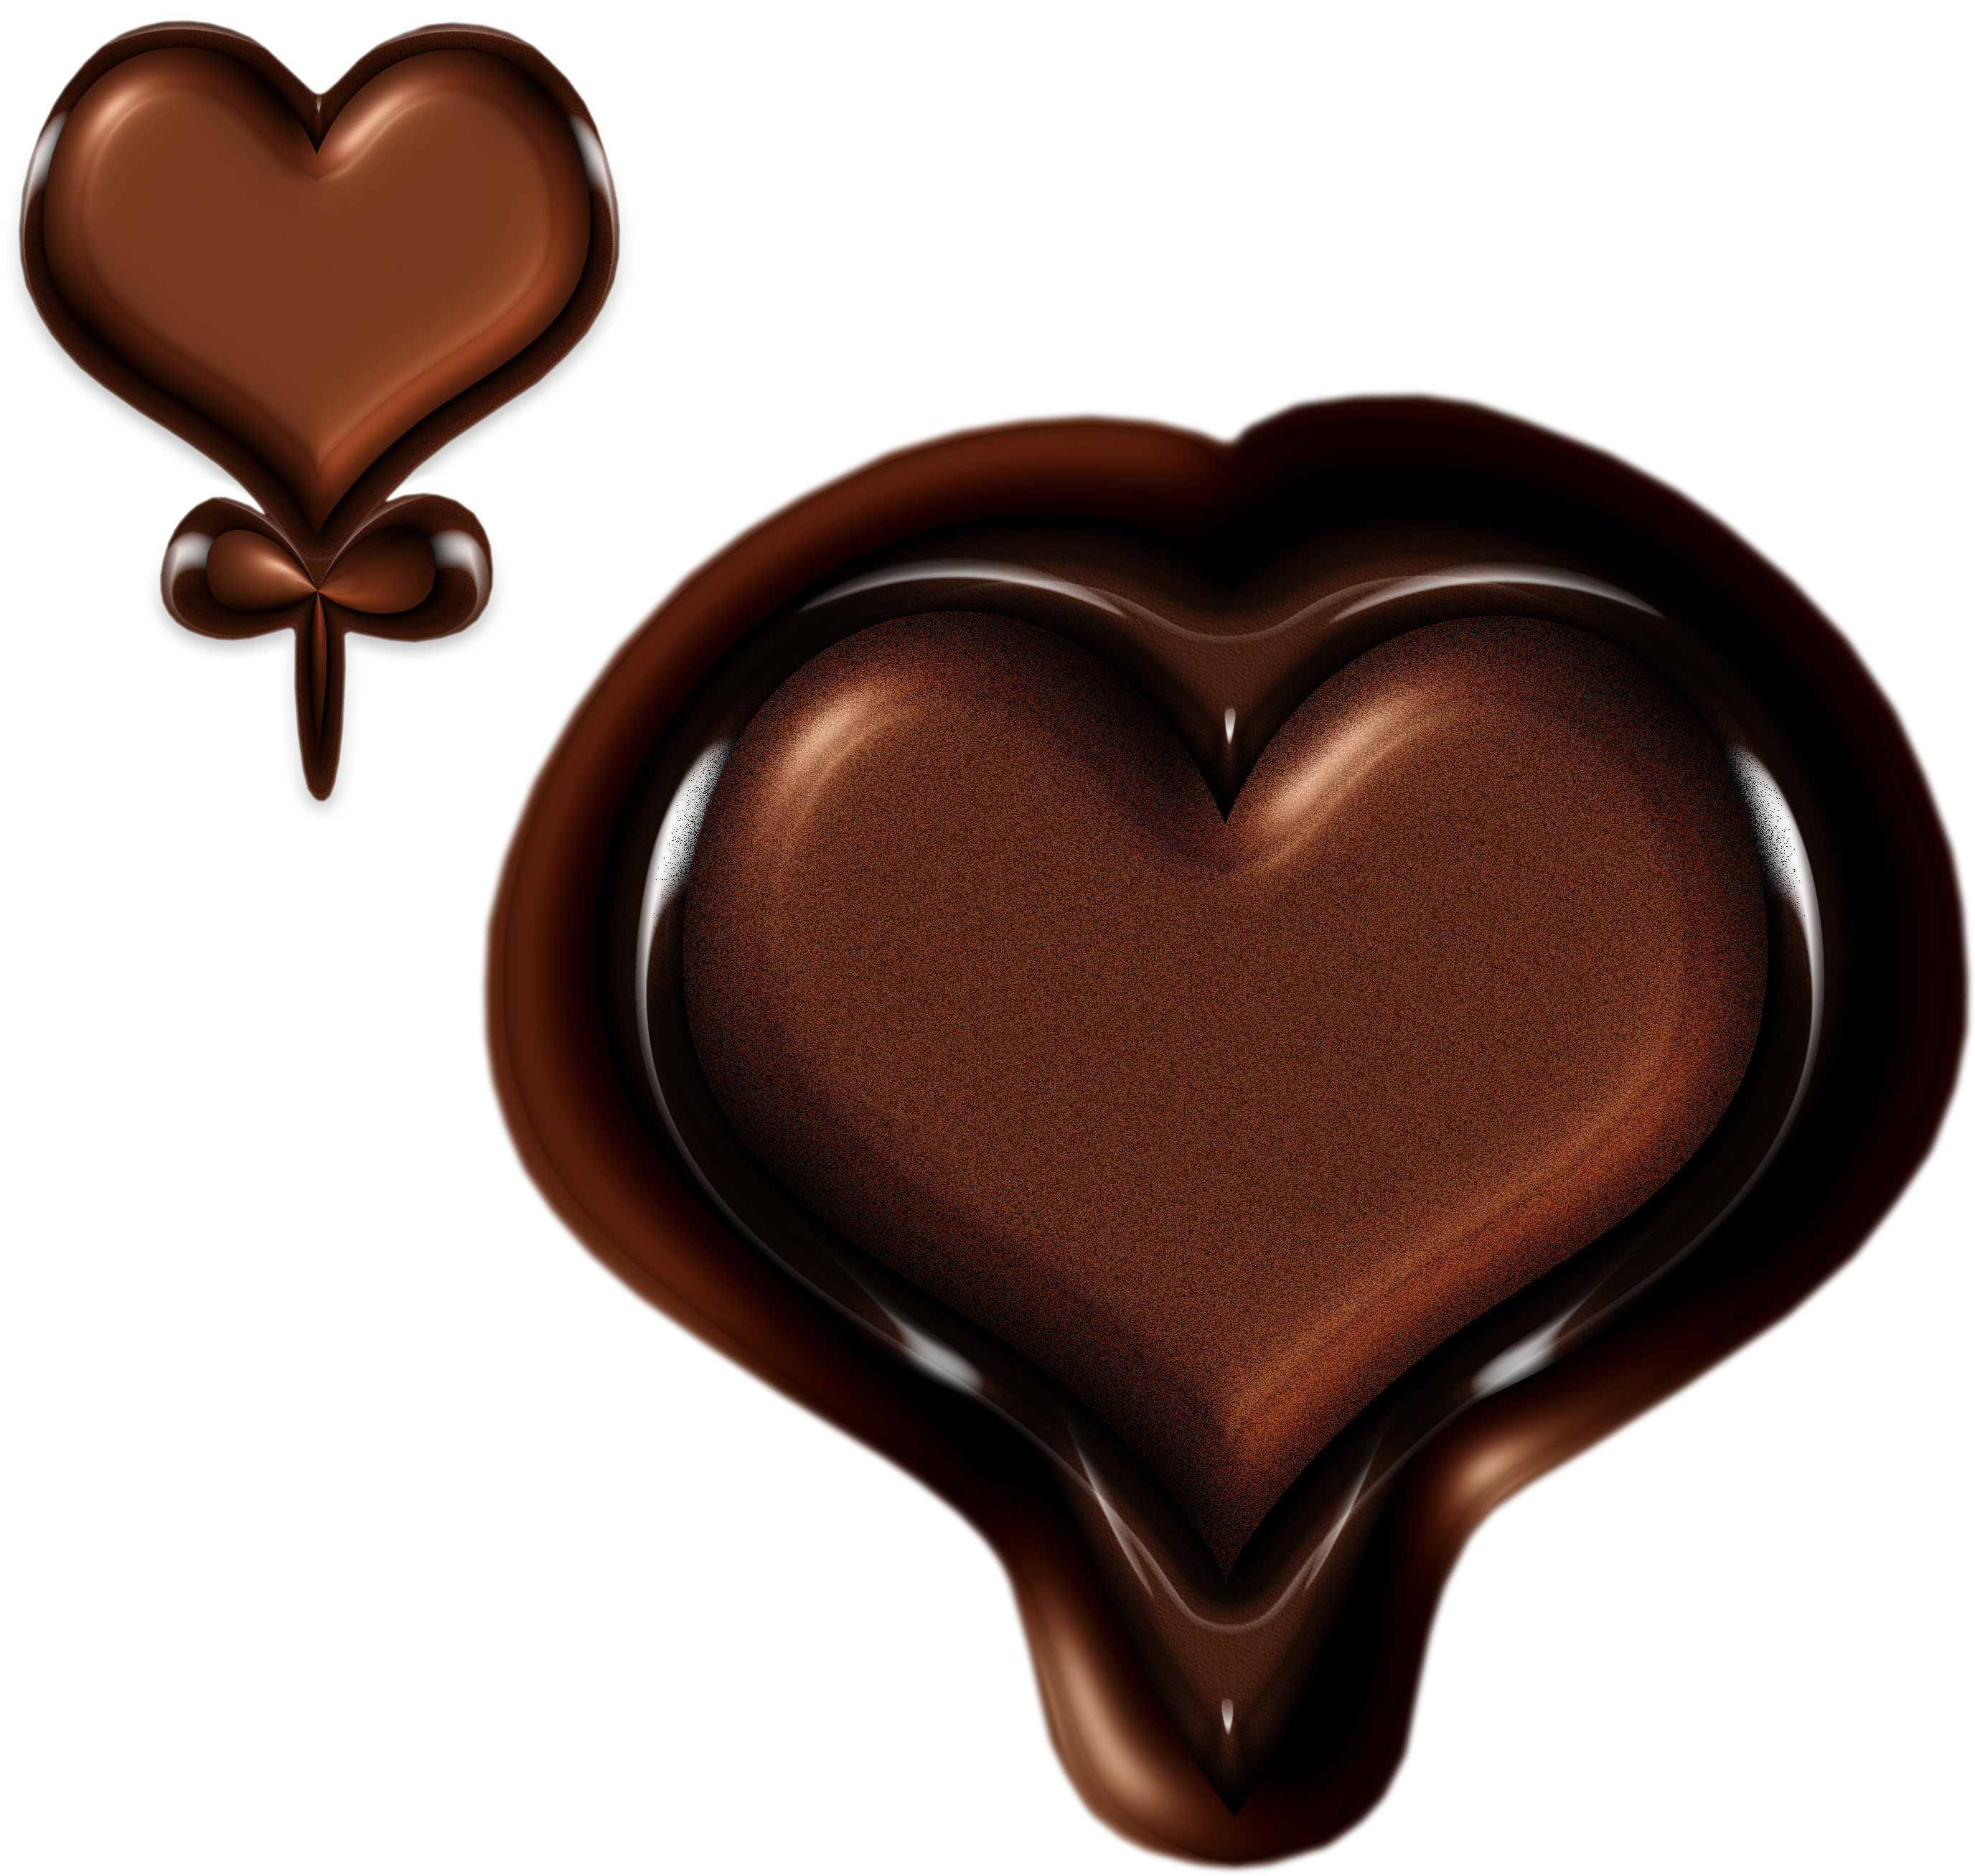 Chocolate Cake Chocolate Milk Hot Chocolate White Chocolate - Heart (3000x3000)